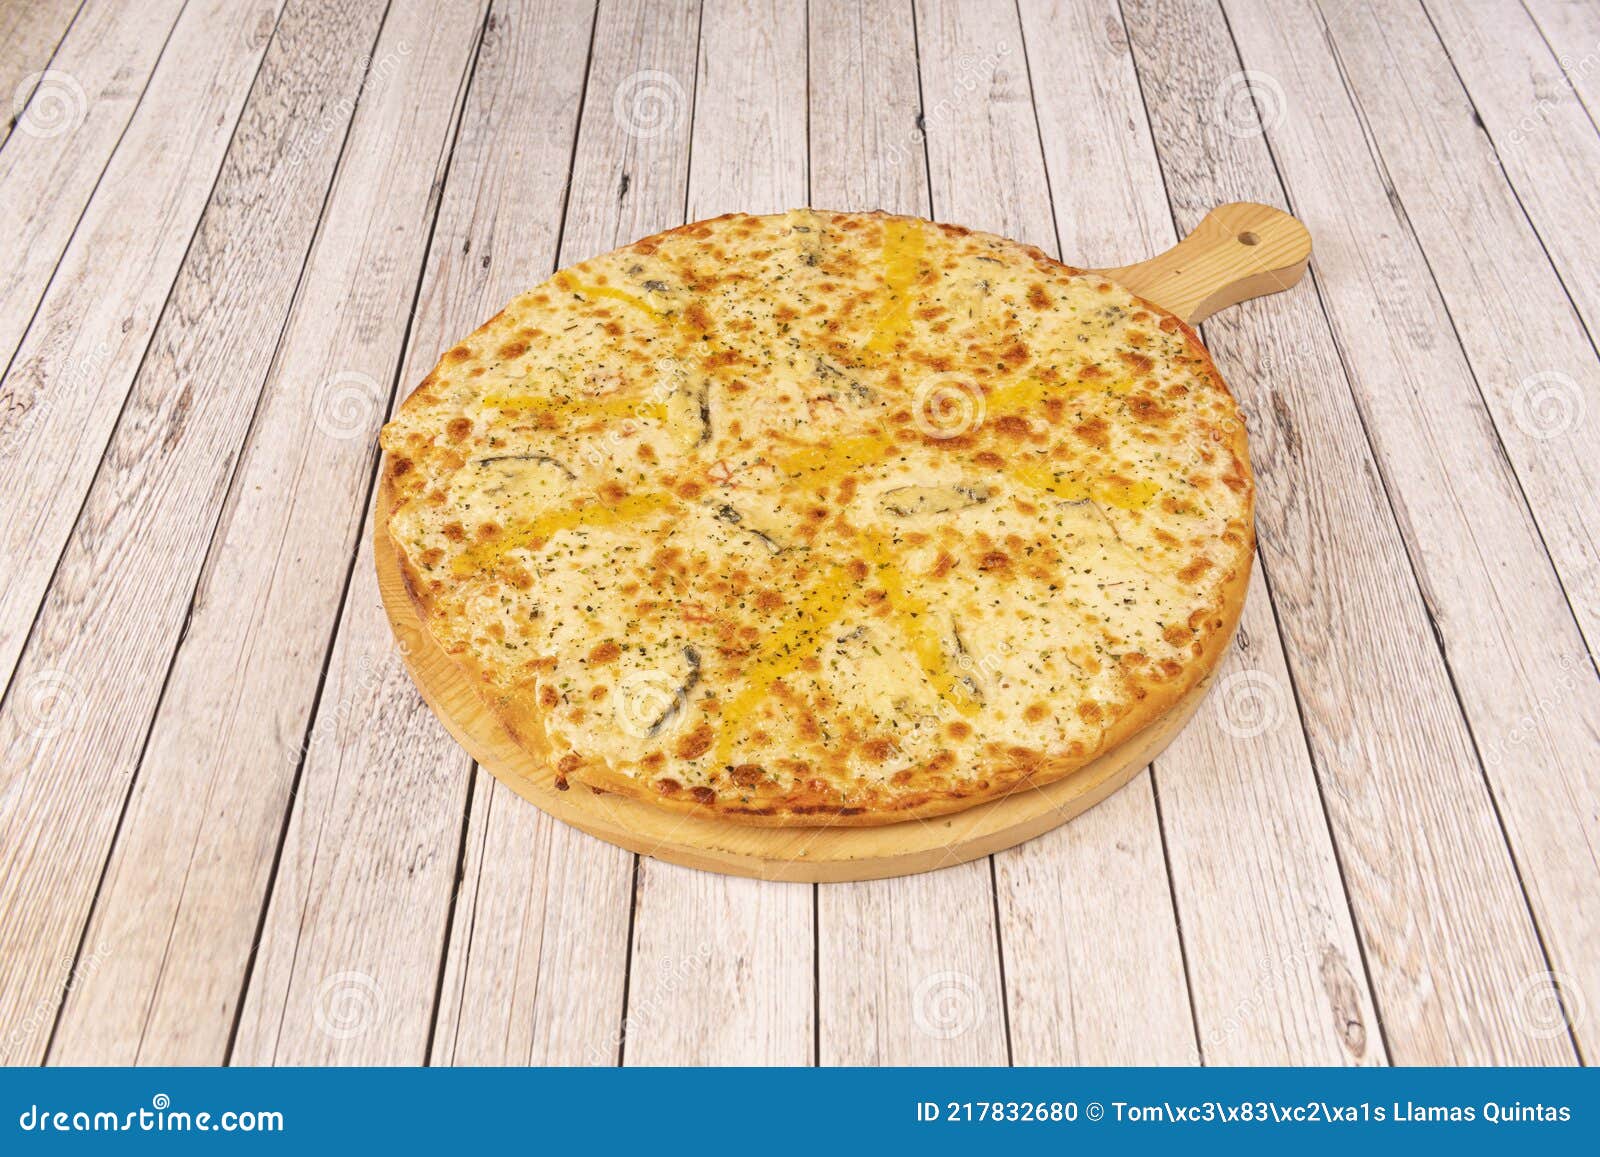 сколько калорий в пицце четыре сыра в одном куске фото 110